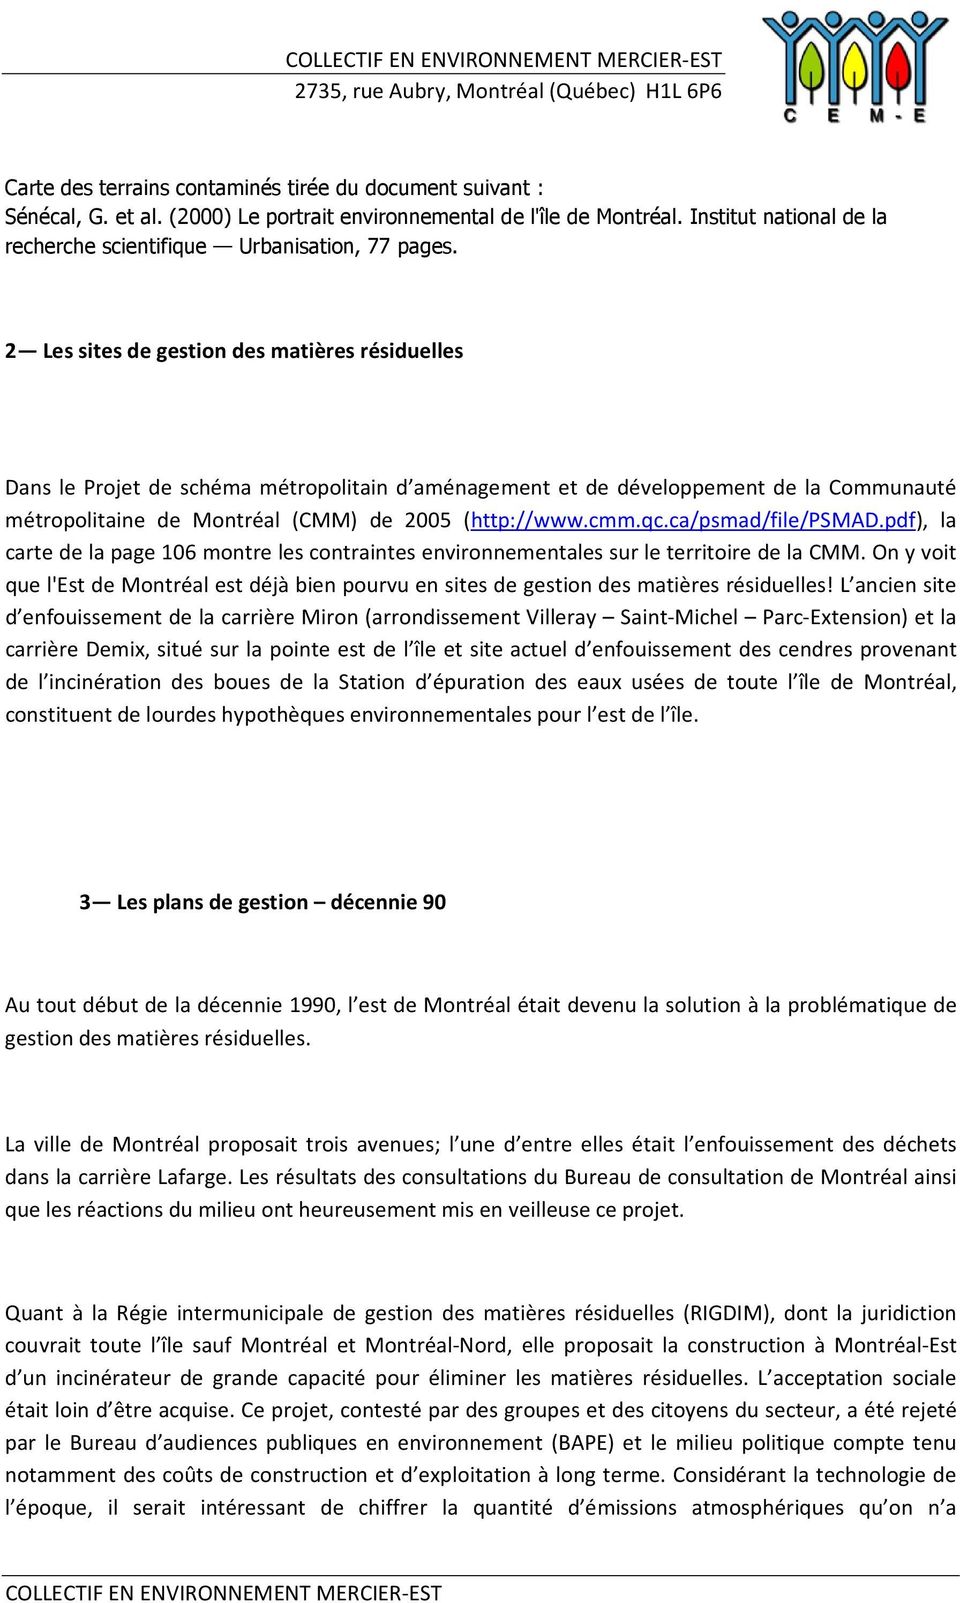 2 Les sites de gestion des matières résiduelles Dans le Projet de schéma métropolitain d aménagement et de développement de la Communauté métropolitaine de Montréal (CMM) de 2005 (http://www.cmm.qc.